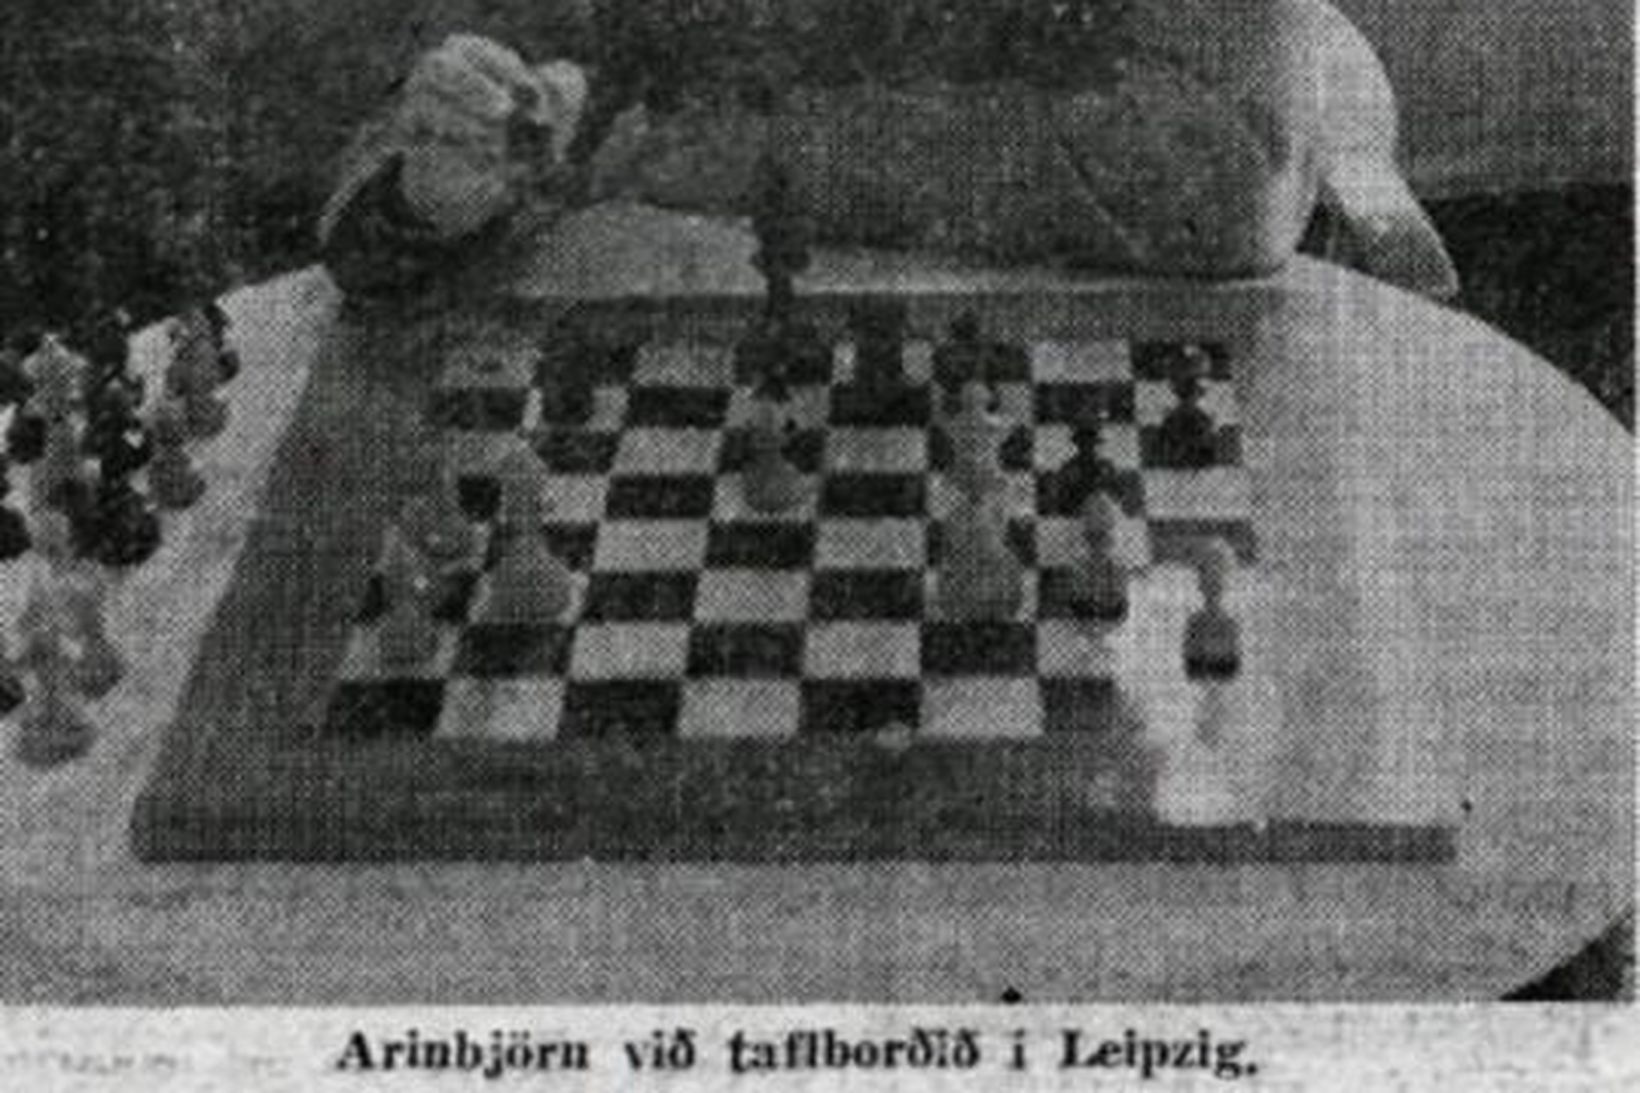 Arinbjörn Guðmundsson við taflborðið á Ólympíuskákmótinu í Leipzig árið 1960.